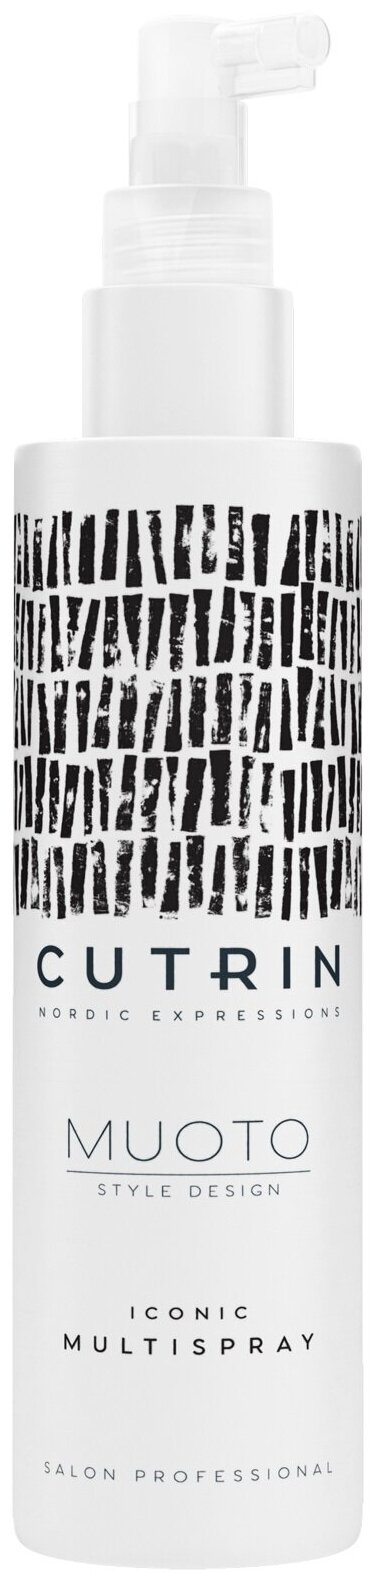 Cutrin Культовый многофункциональный спрей Muoto Iconic